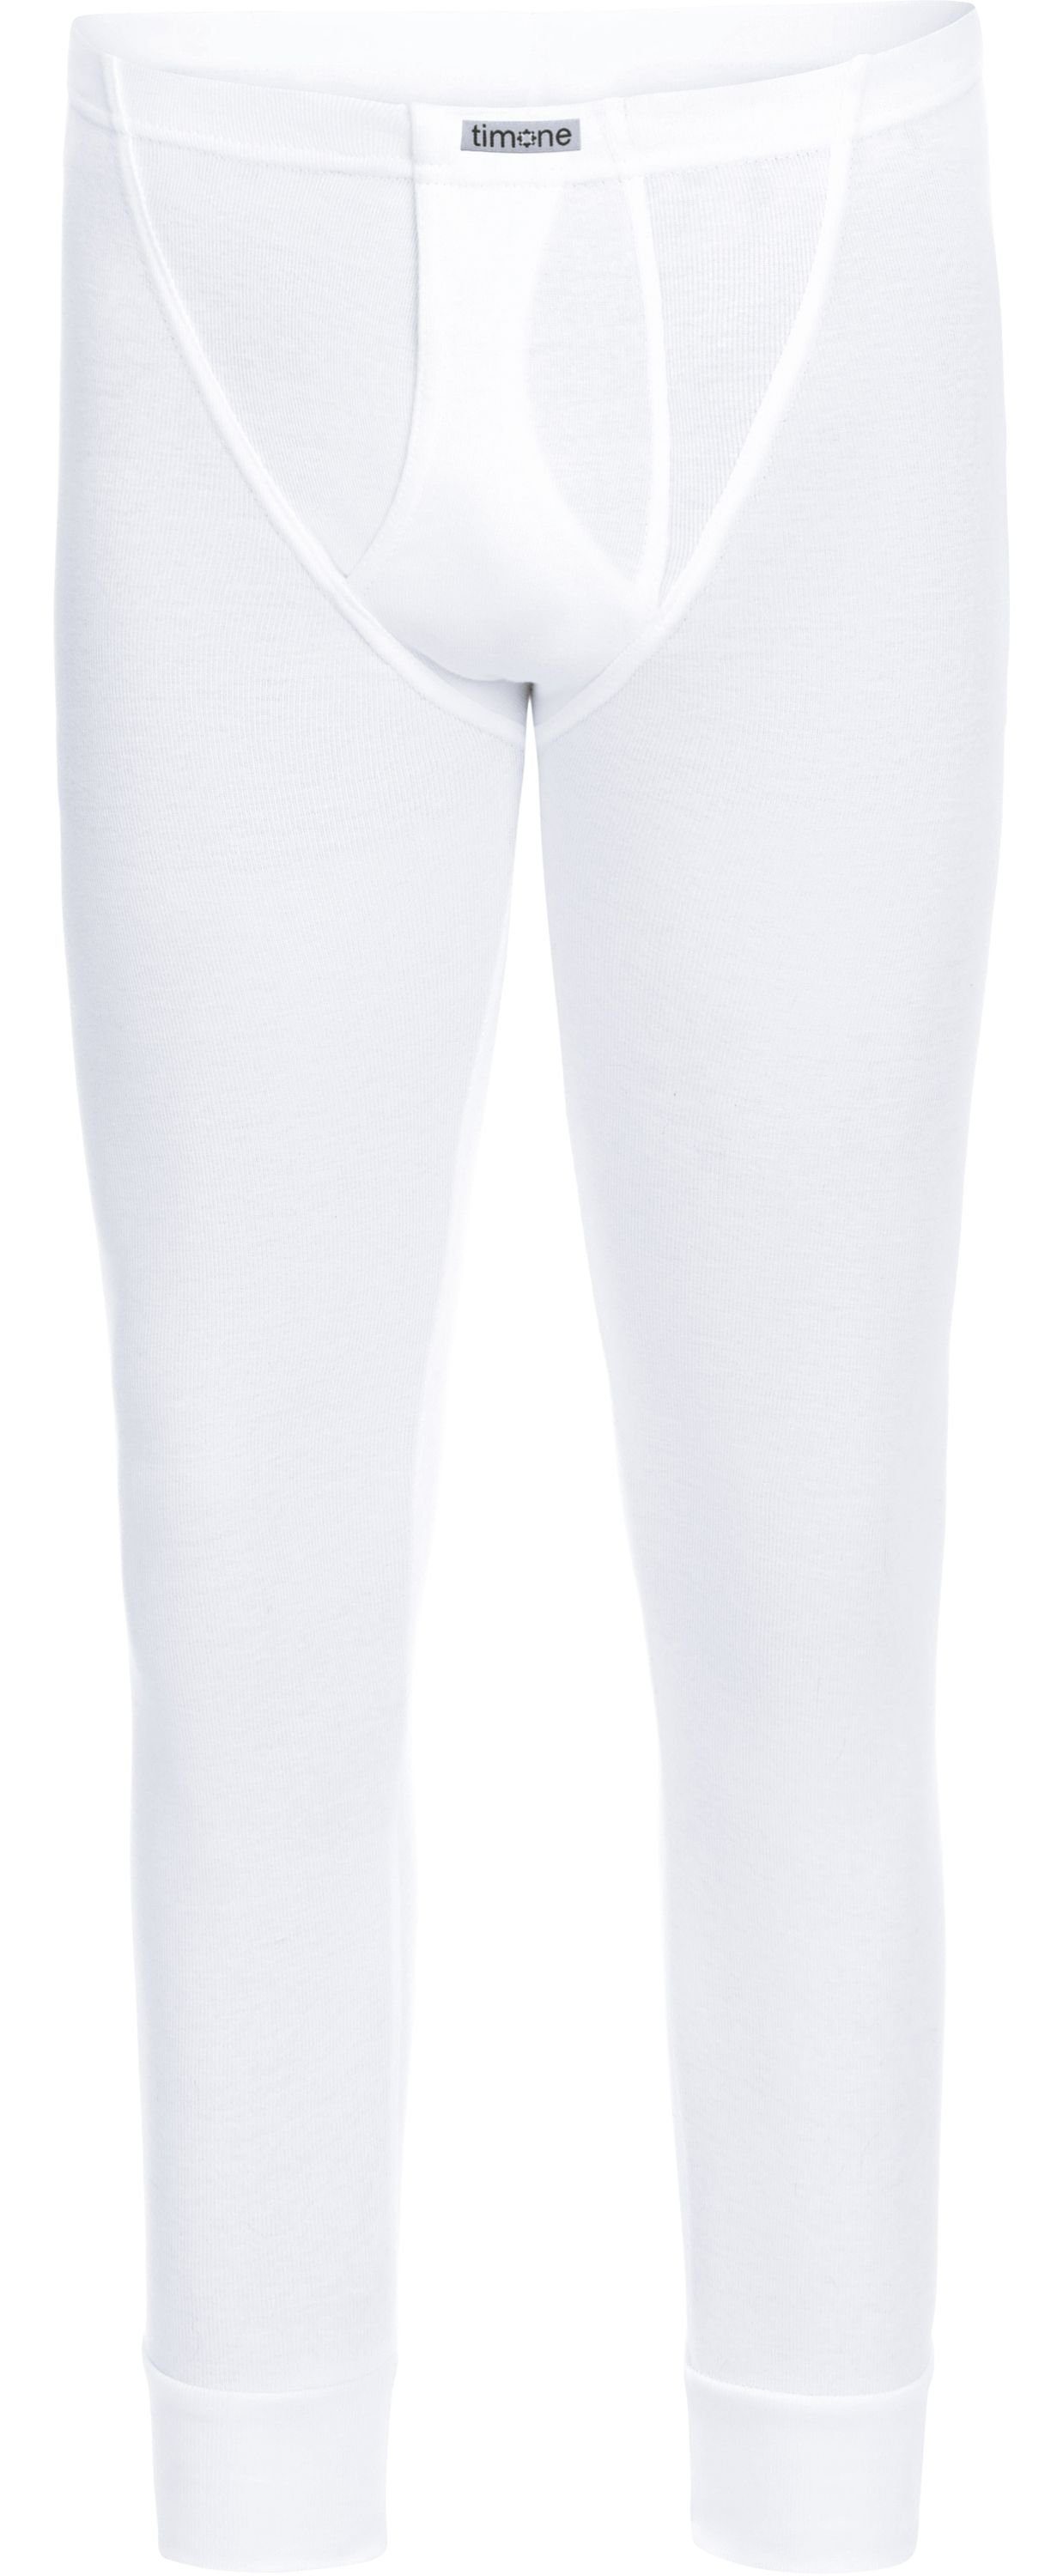 Timone Lange Unterhose Jungen Lange Weiß (1-St) TISS1001 Unterhose